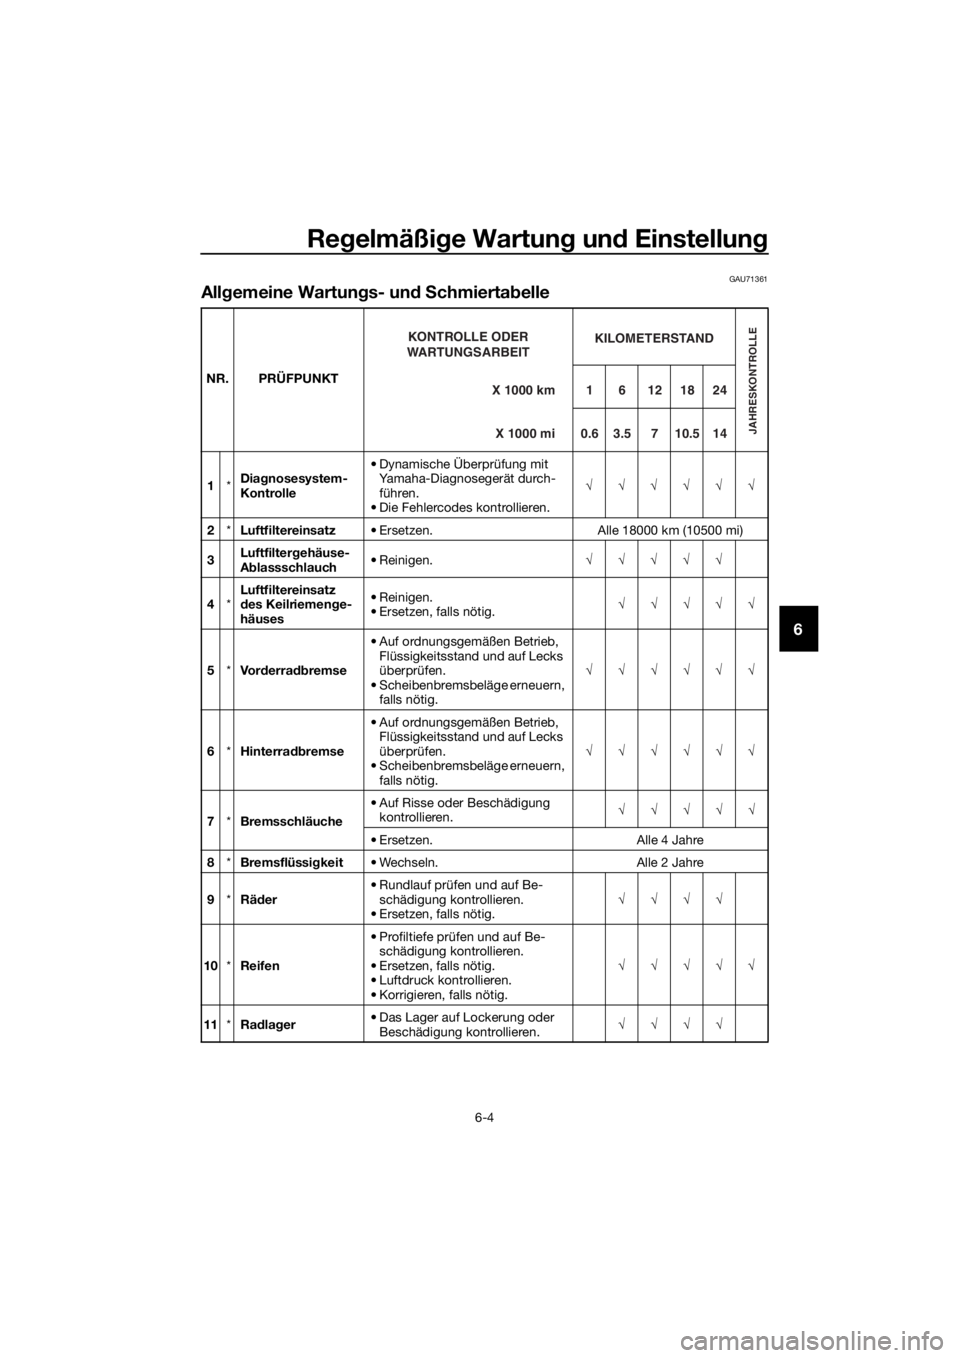 YAMAHA NMAX 150 2019  Betriebsanleitungen (in German) Regelmäßige Wartung und Einstellung
6-4
6
GAU71361
Allgemeine Wartungs- und Schmiertabelle
NR. PRÜFPUNKT
1*Diagnosesystem-
Kontrolle• Dynamische Überprüfung mit 
Yamaha-Diagnosegerät durch-
f�